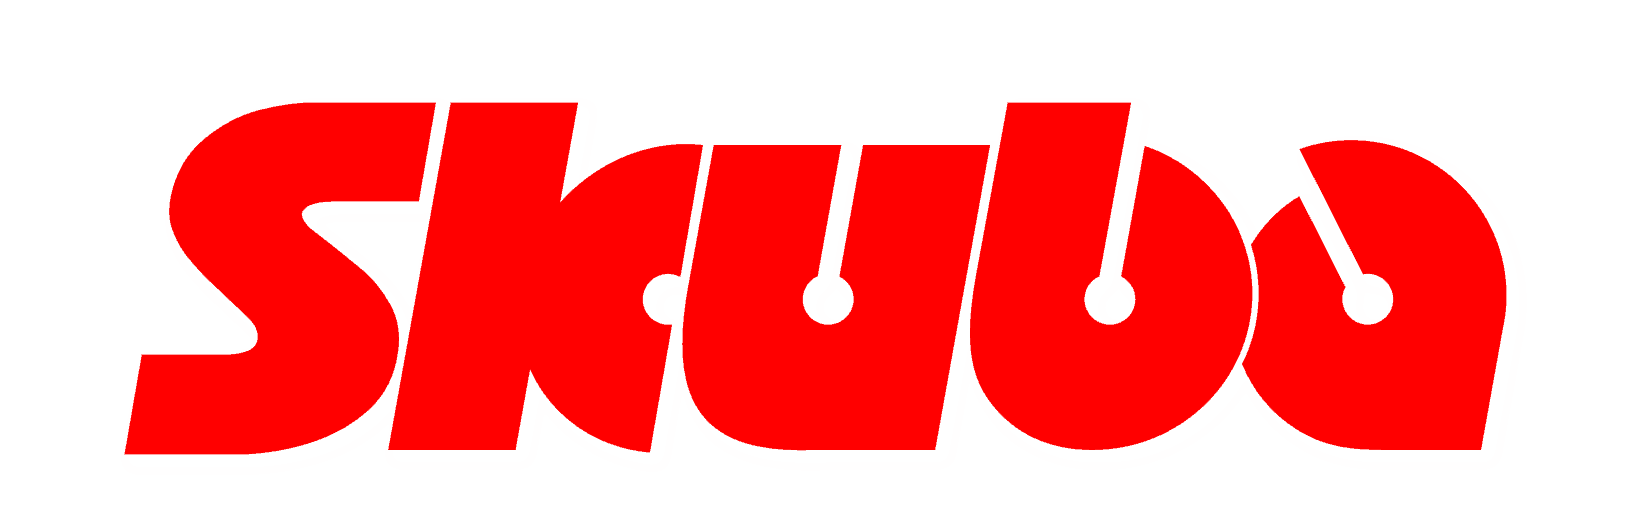 skuba logo